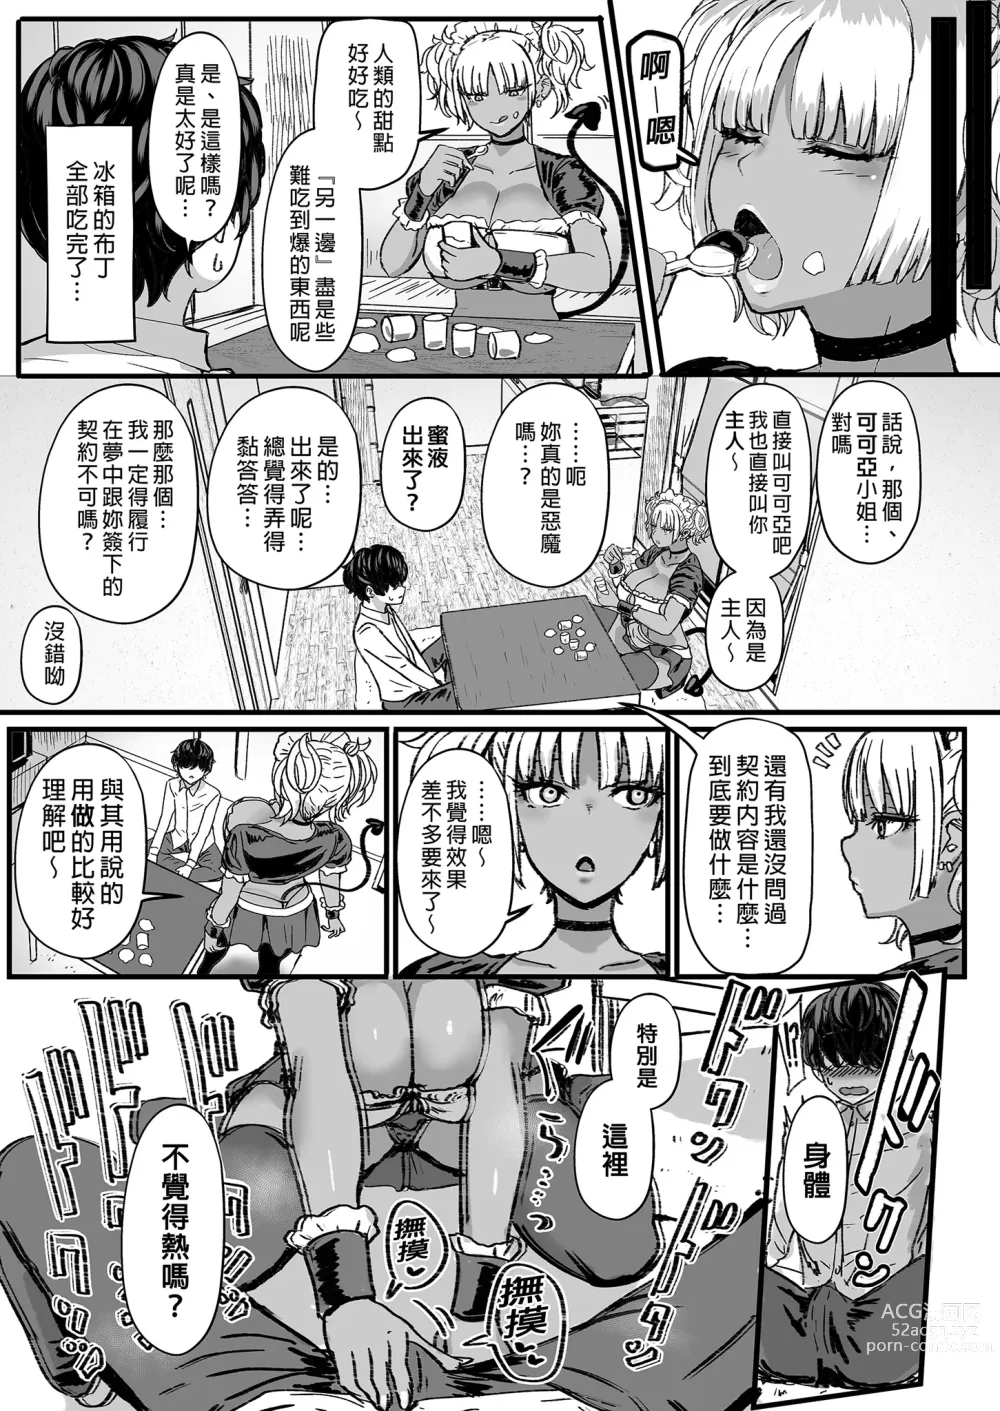 Page 5 of doujinshi 享用主人的黑辣妹女僕淫魔。 (decensored)